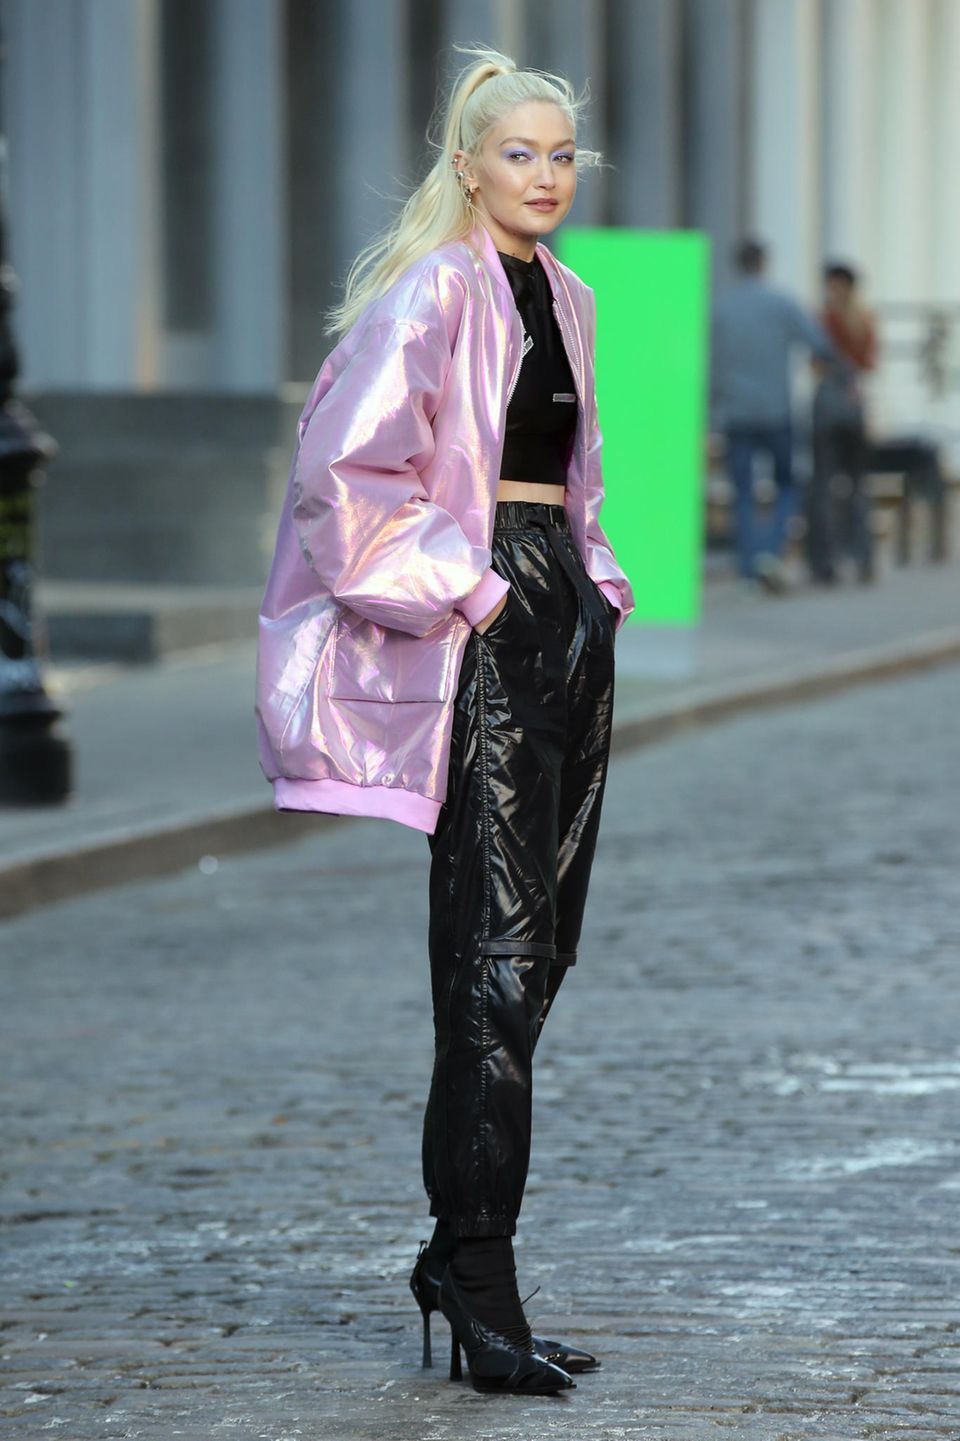 Platinblonde lange Haare gehören nun zum Look von Model Gigi Hadid. Bei einem Maybelline Werbesport Dreh in New York trägt die 26-Jährige ihre neue Frisur als hohen Zopf. Die Kombination aus einer übergroßen pinken Bomberjacke, einer lässigen schwarzen Hosen und farbenfrohen Make-up runden den Look ab.